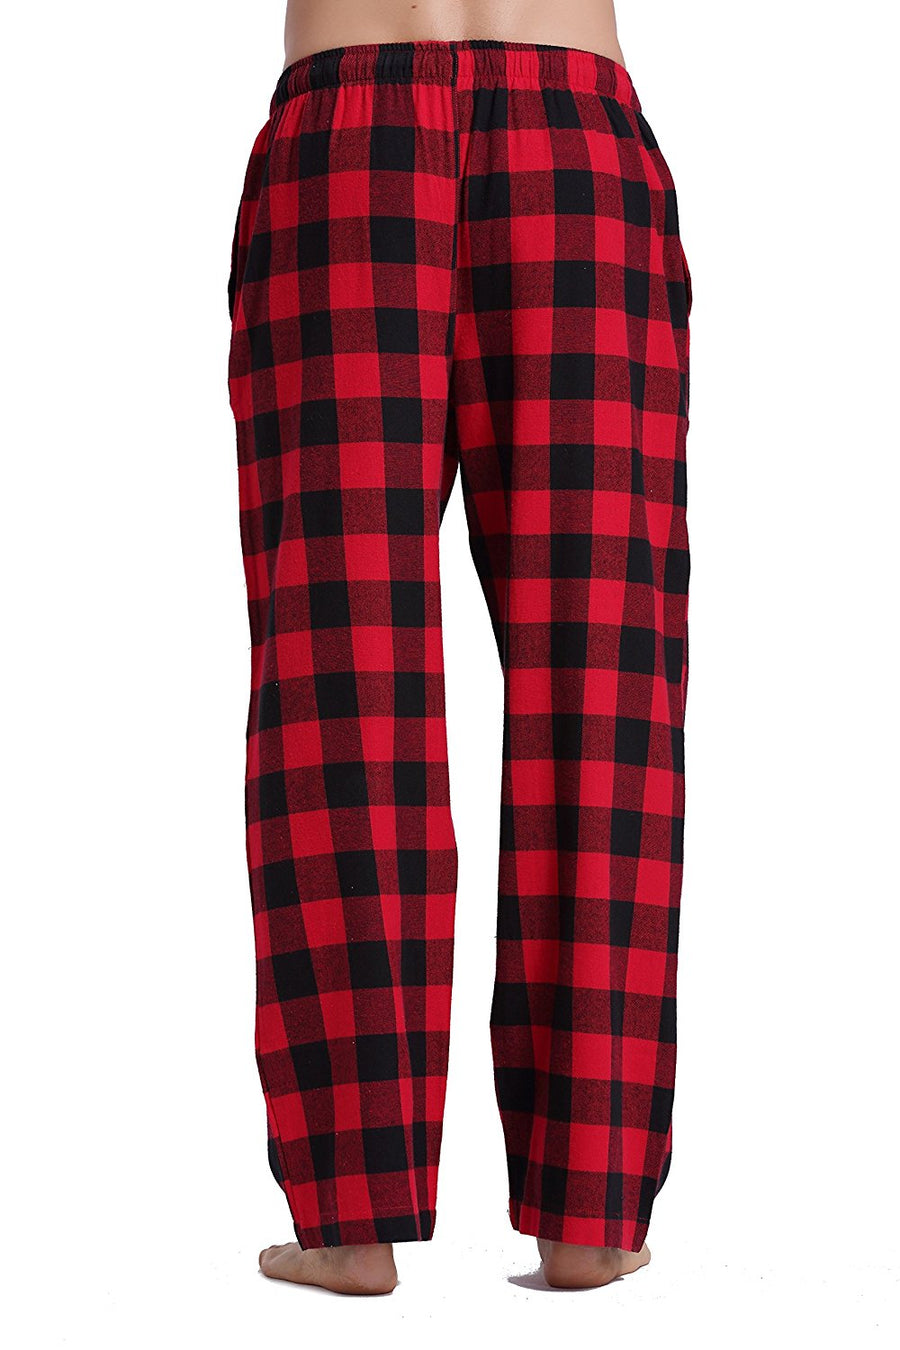 JUNZAN Mens Red Black Plaid Pajama Pants Pj Pants for Men Pajama